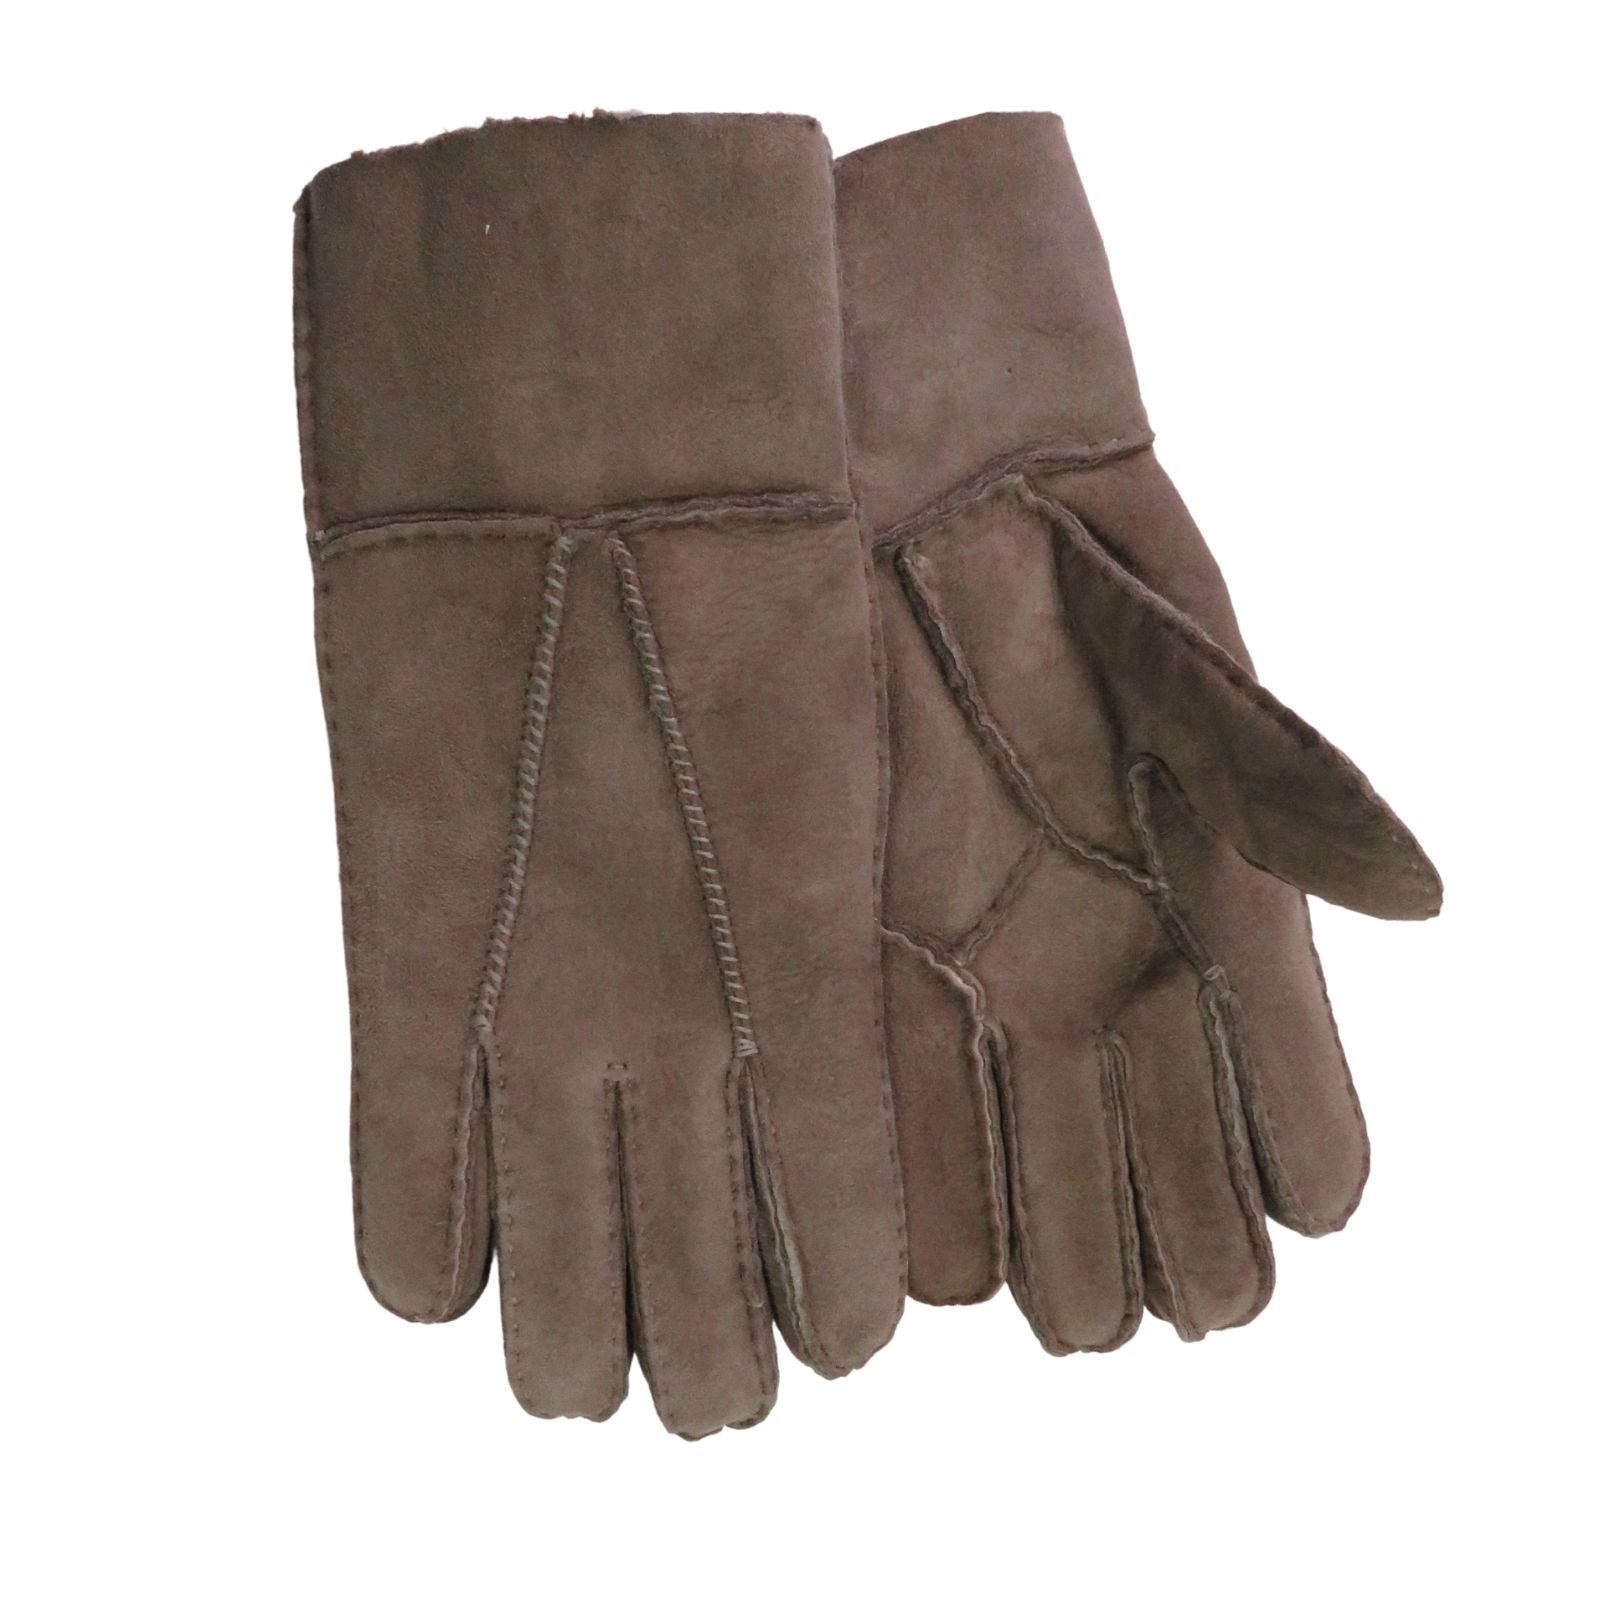 Women's Sheepskin Gloves, Our "Dogwalker" ASSORTED BROWNS